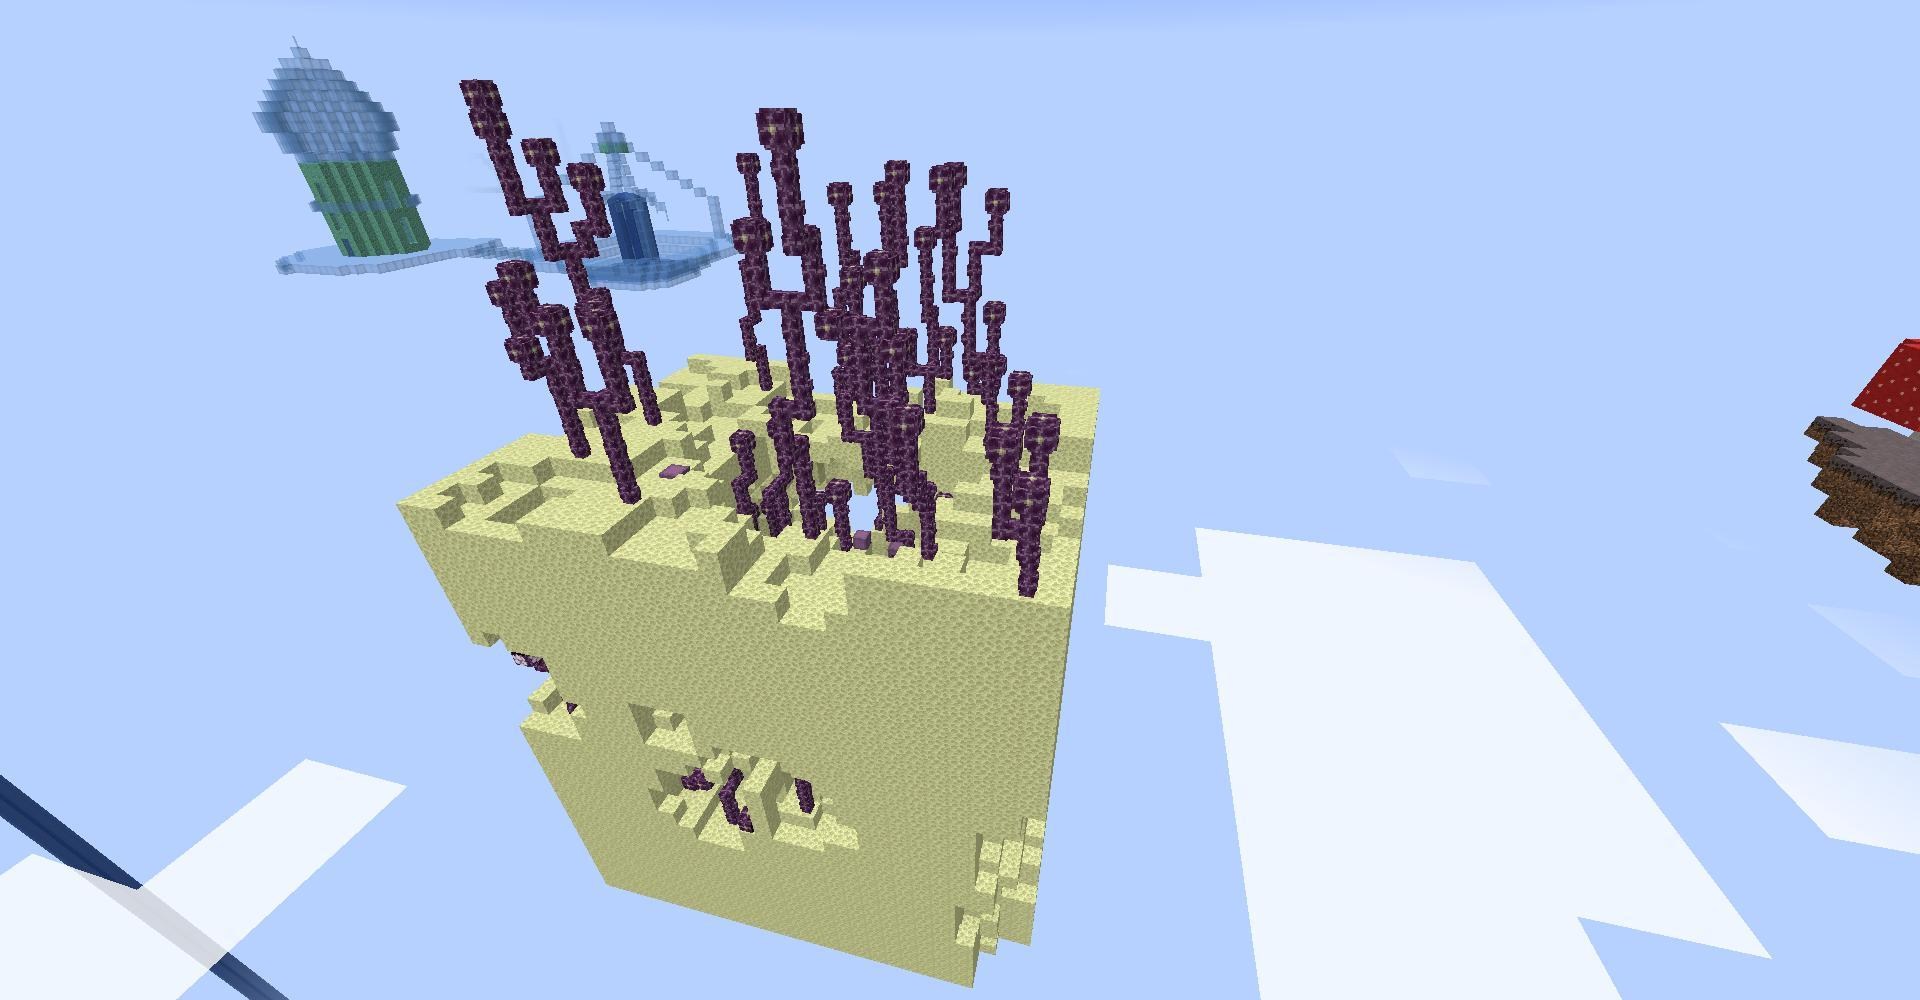 冰狐製空島生存 1 15 1微冒險向小品空島生存 失落的空島 Minecraft 我的世界 當個創世神 哈啦板 巴哈姆特